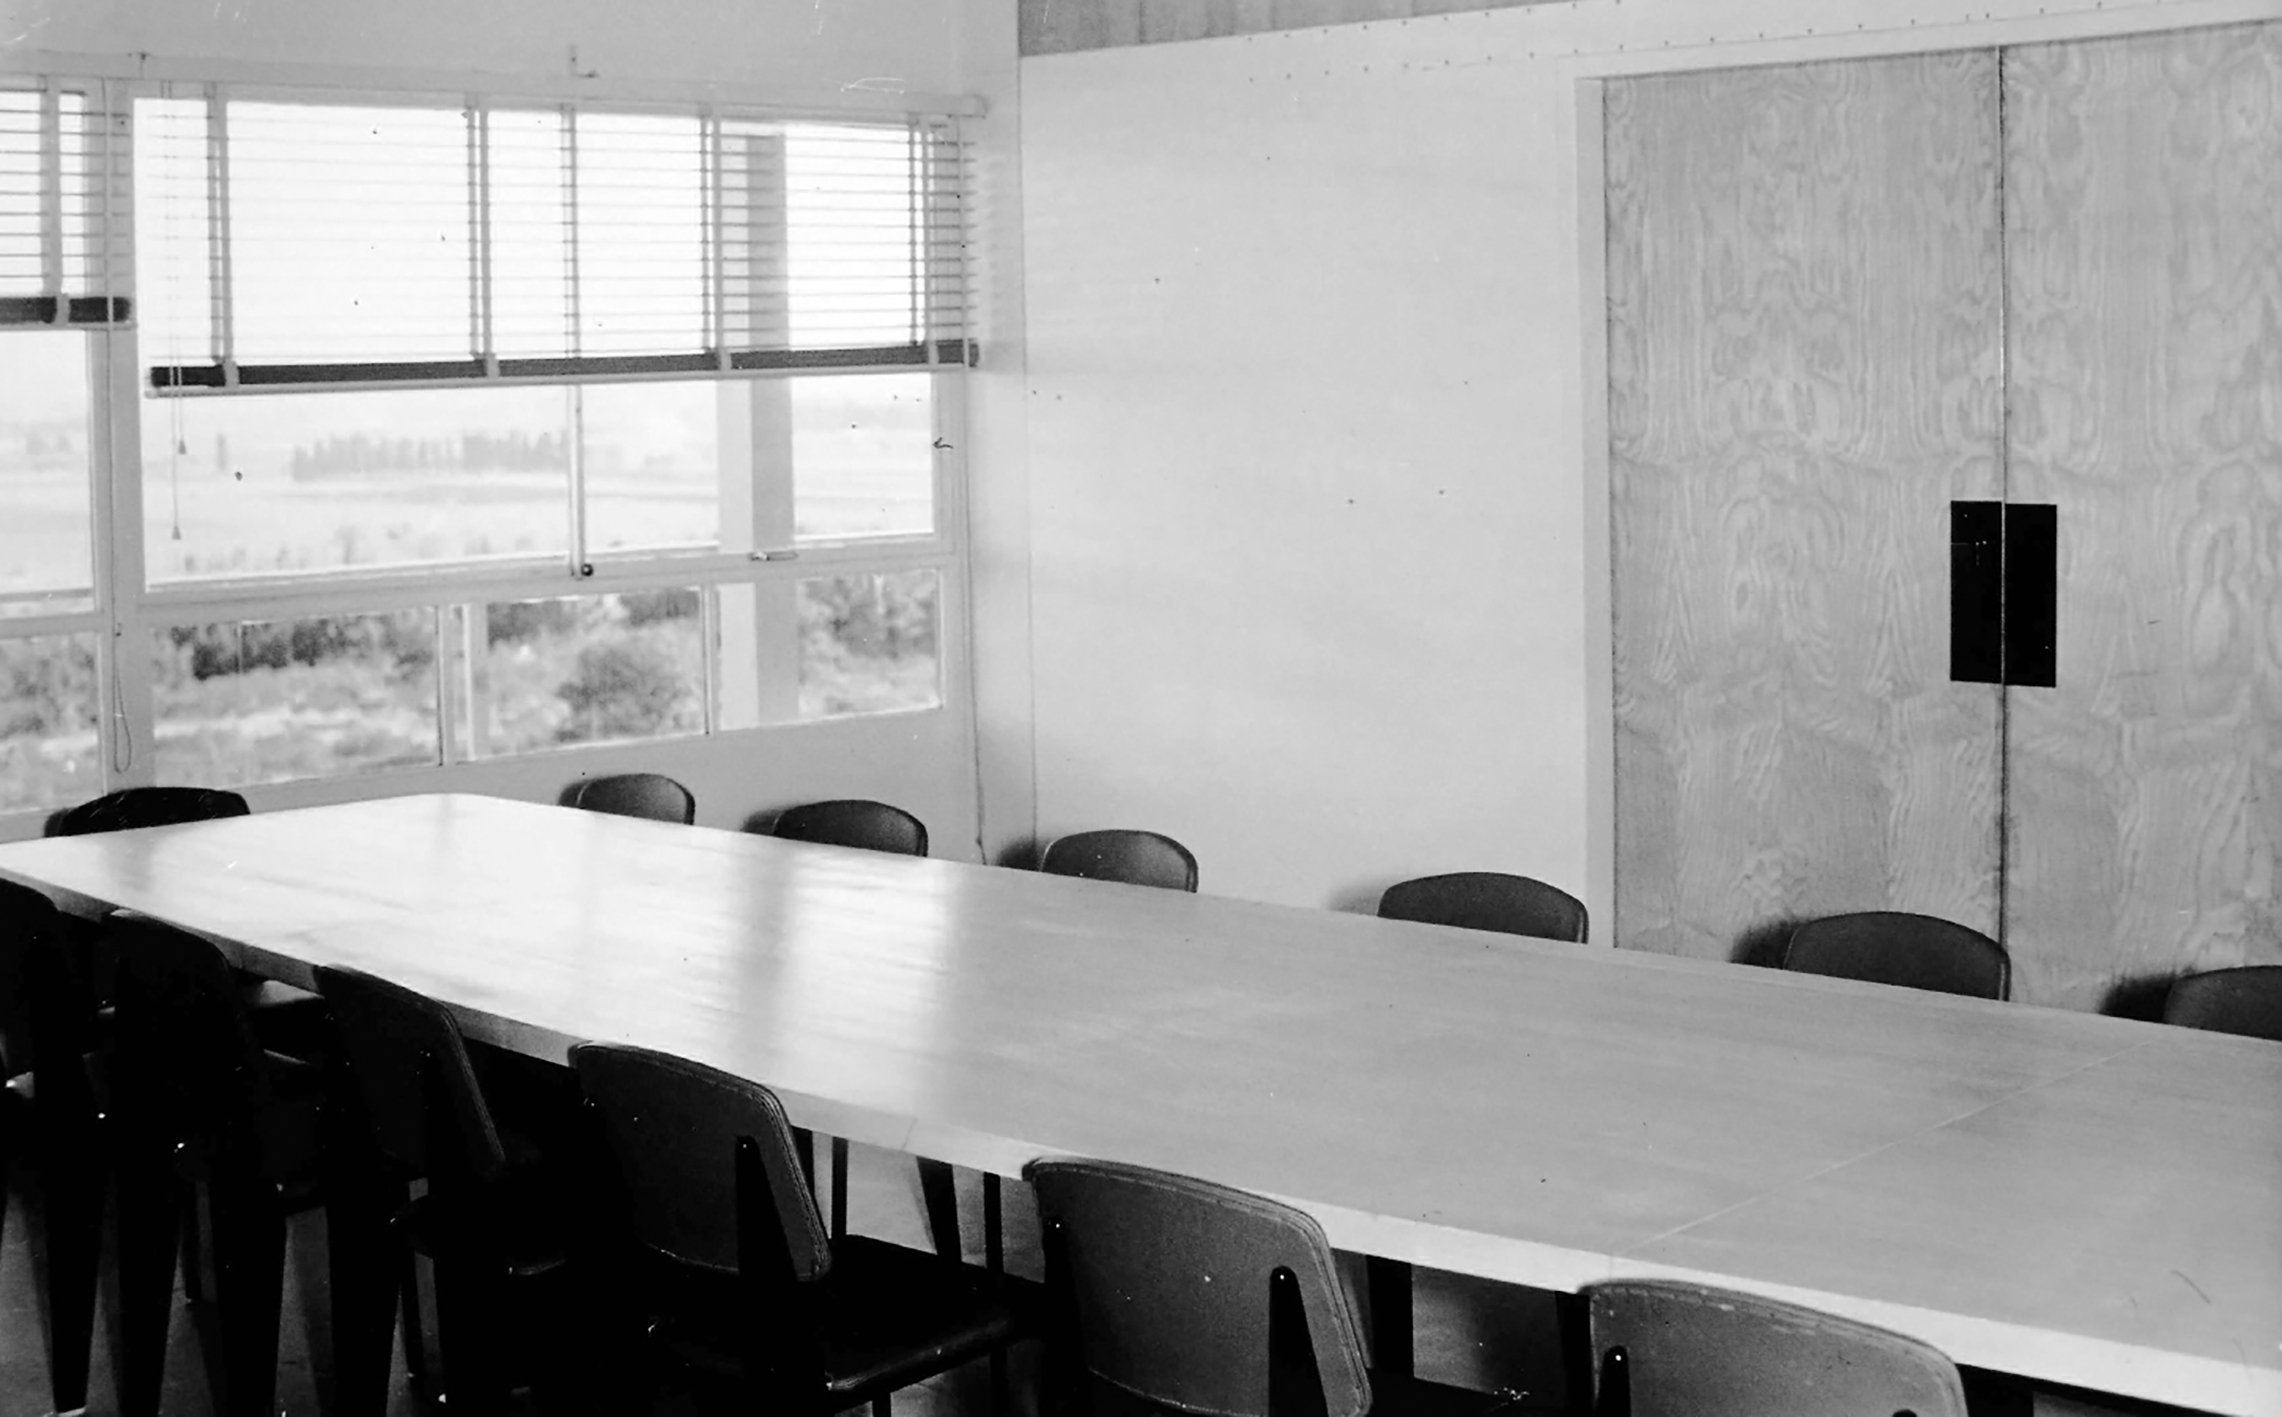 Commissariat à l’Énergie Atomique, Centre de Marcoule, Bagnols-sur-Cèze. The meeting room fitted out with Métropole no. 306 chairs, ca. 1955.